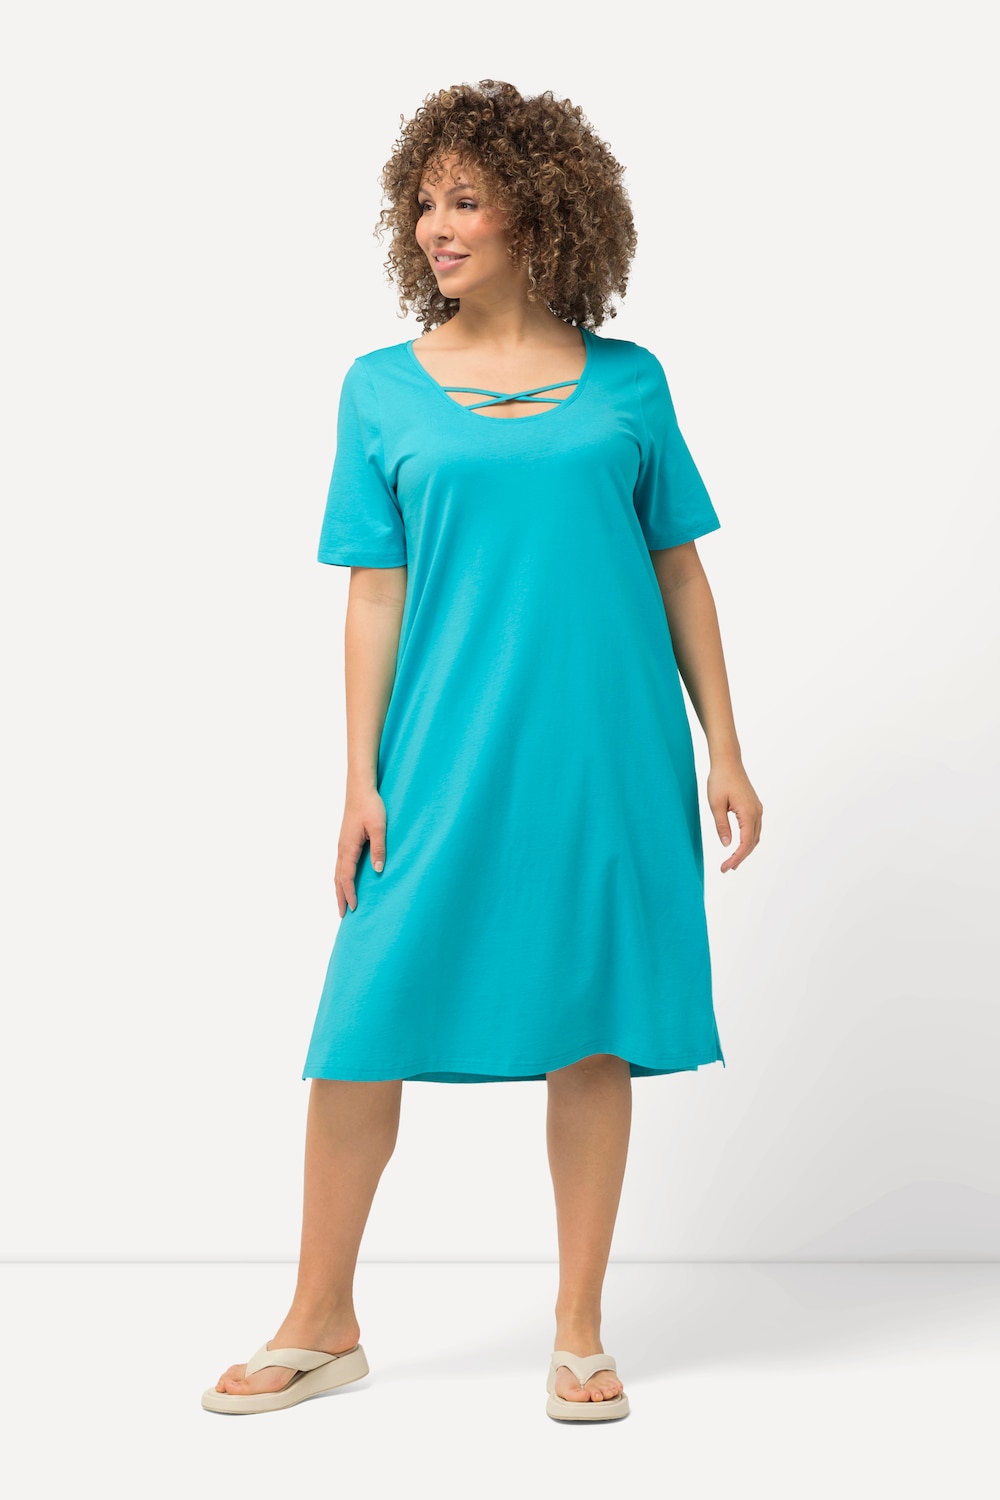 Grote Maten Jersey jurk, Dames, turquoise, Maat: 46/48, Katoen, Ulla Popken